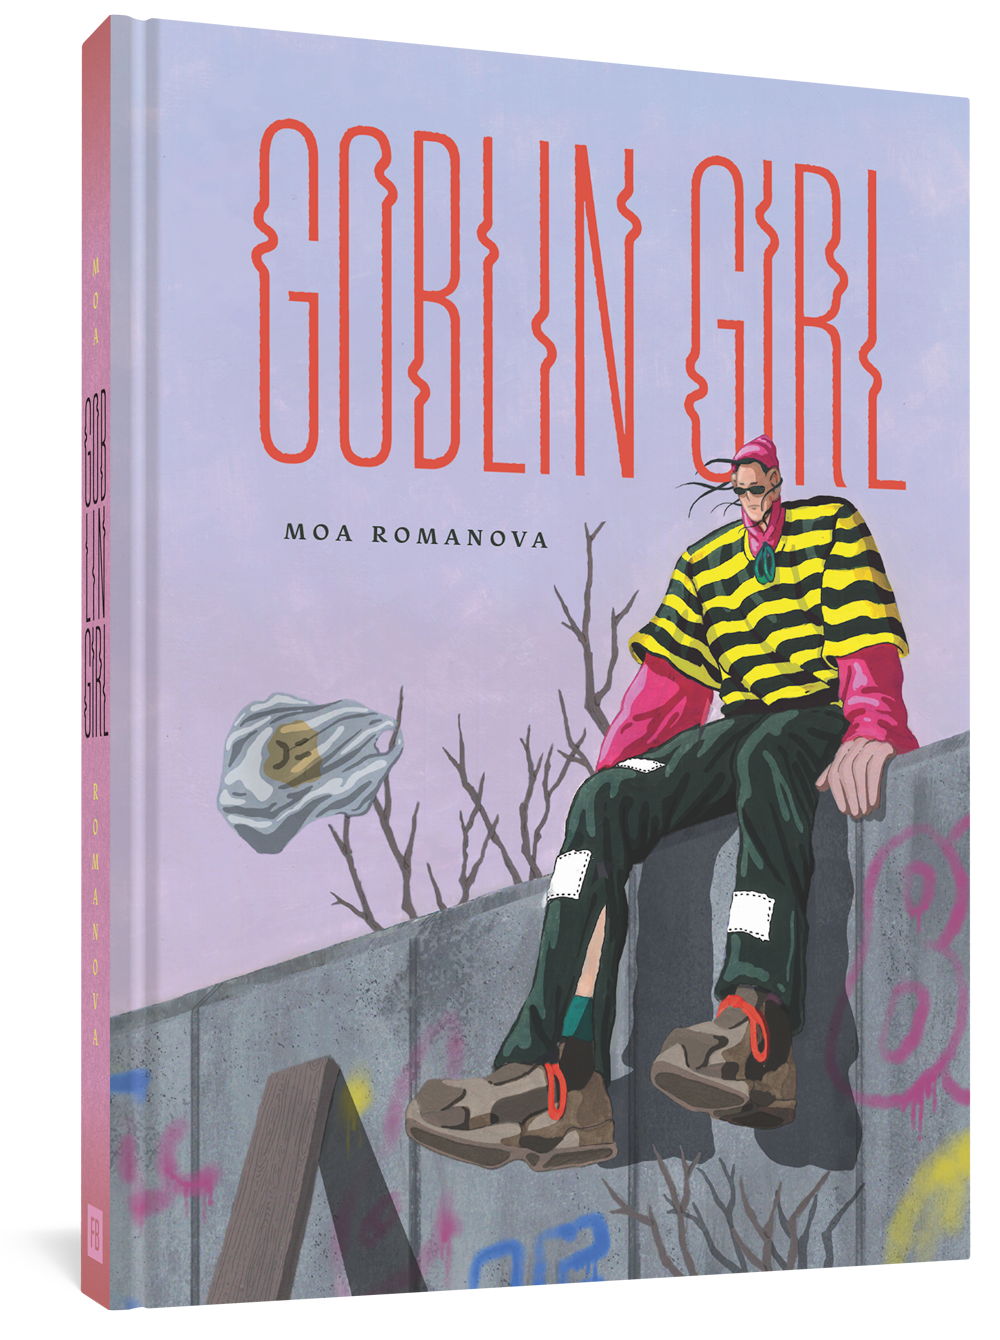 Goblin Girl by Moa Romanova